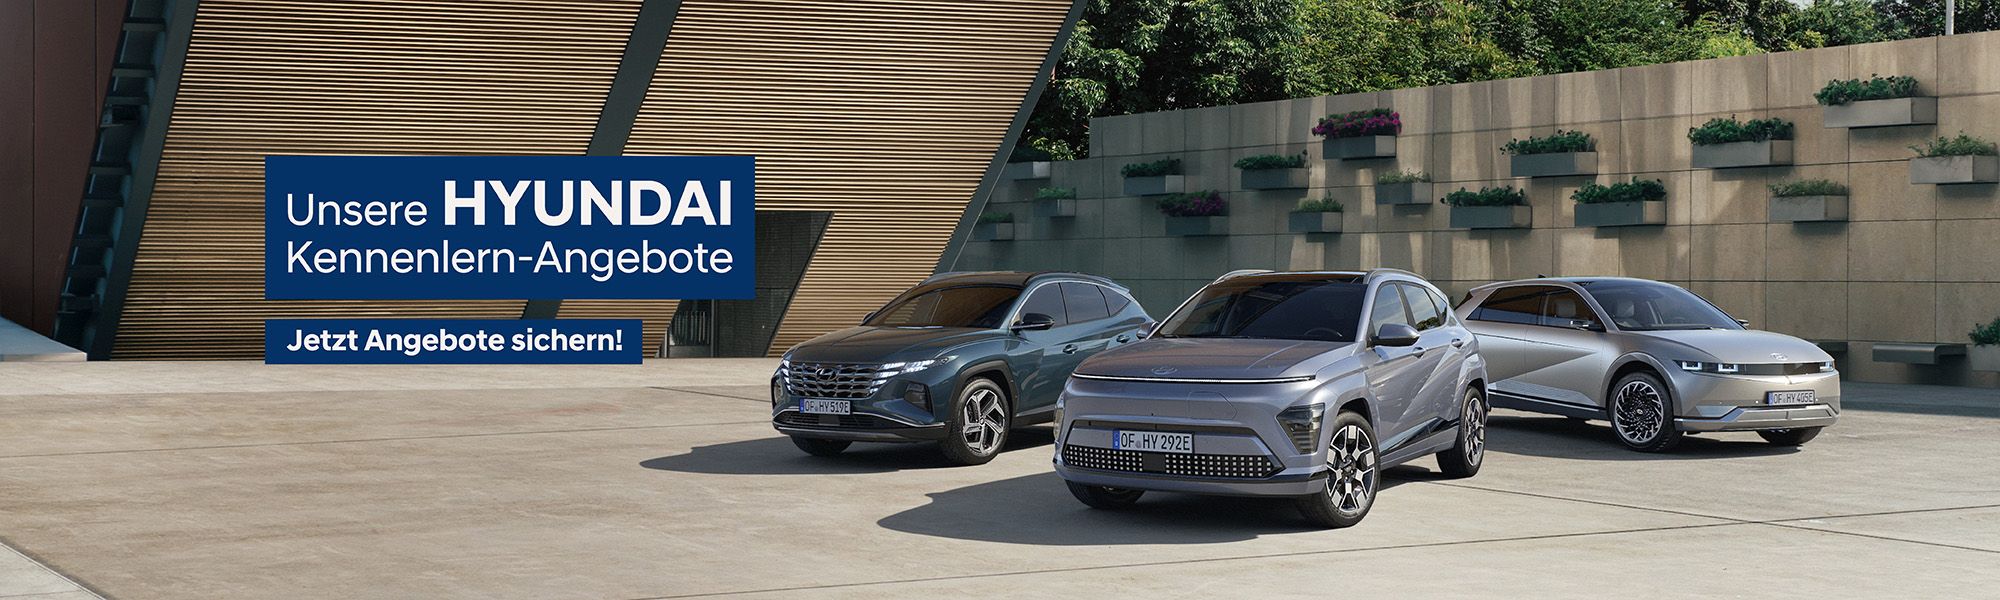 Hyundai Kennenlern-Angebote im Autohaus SCHADE 